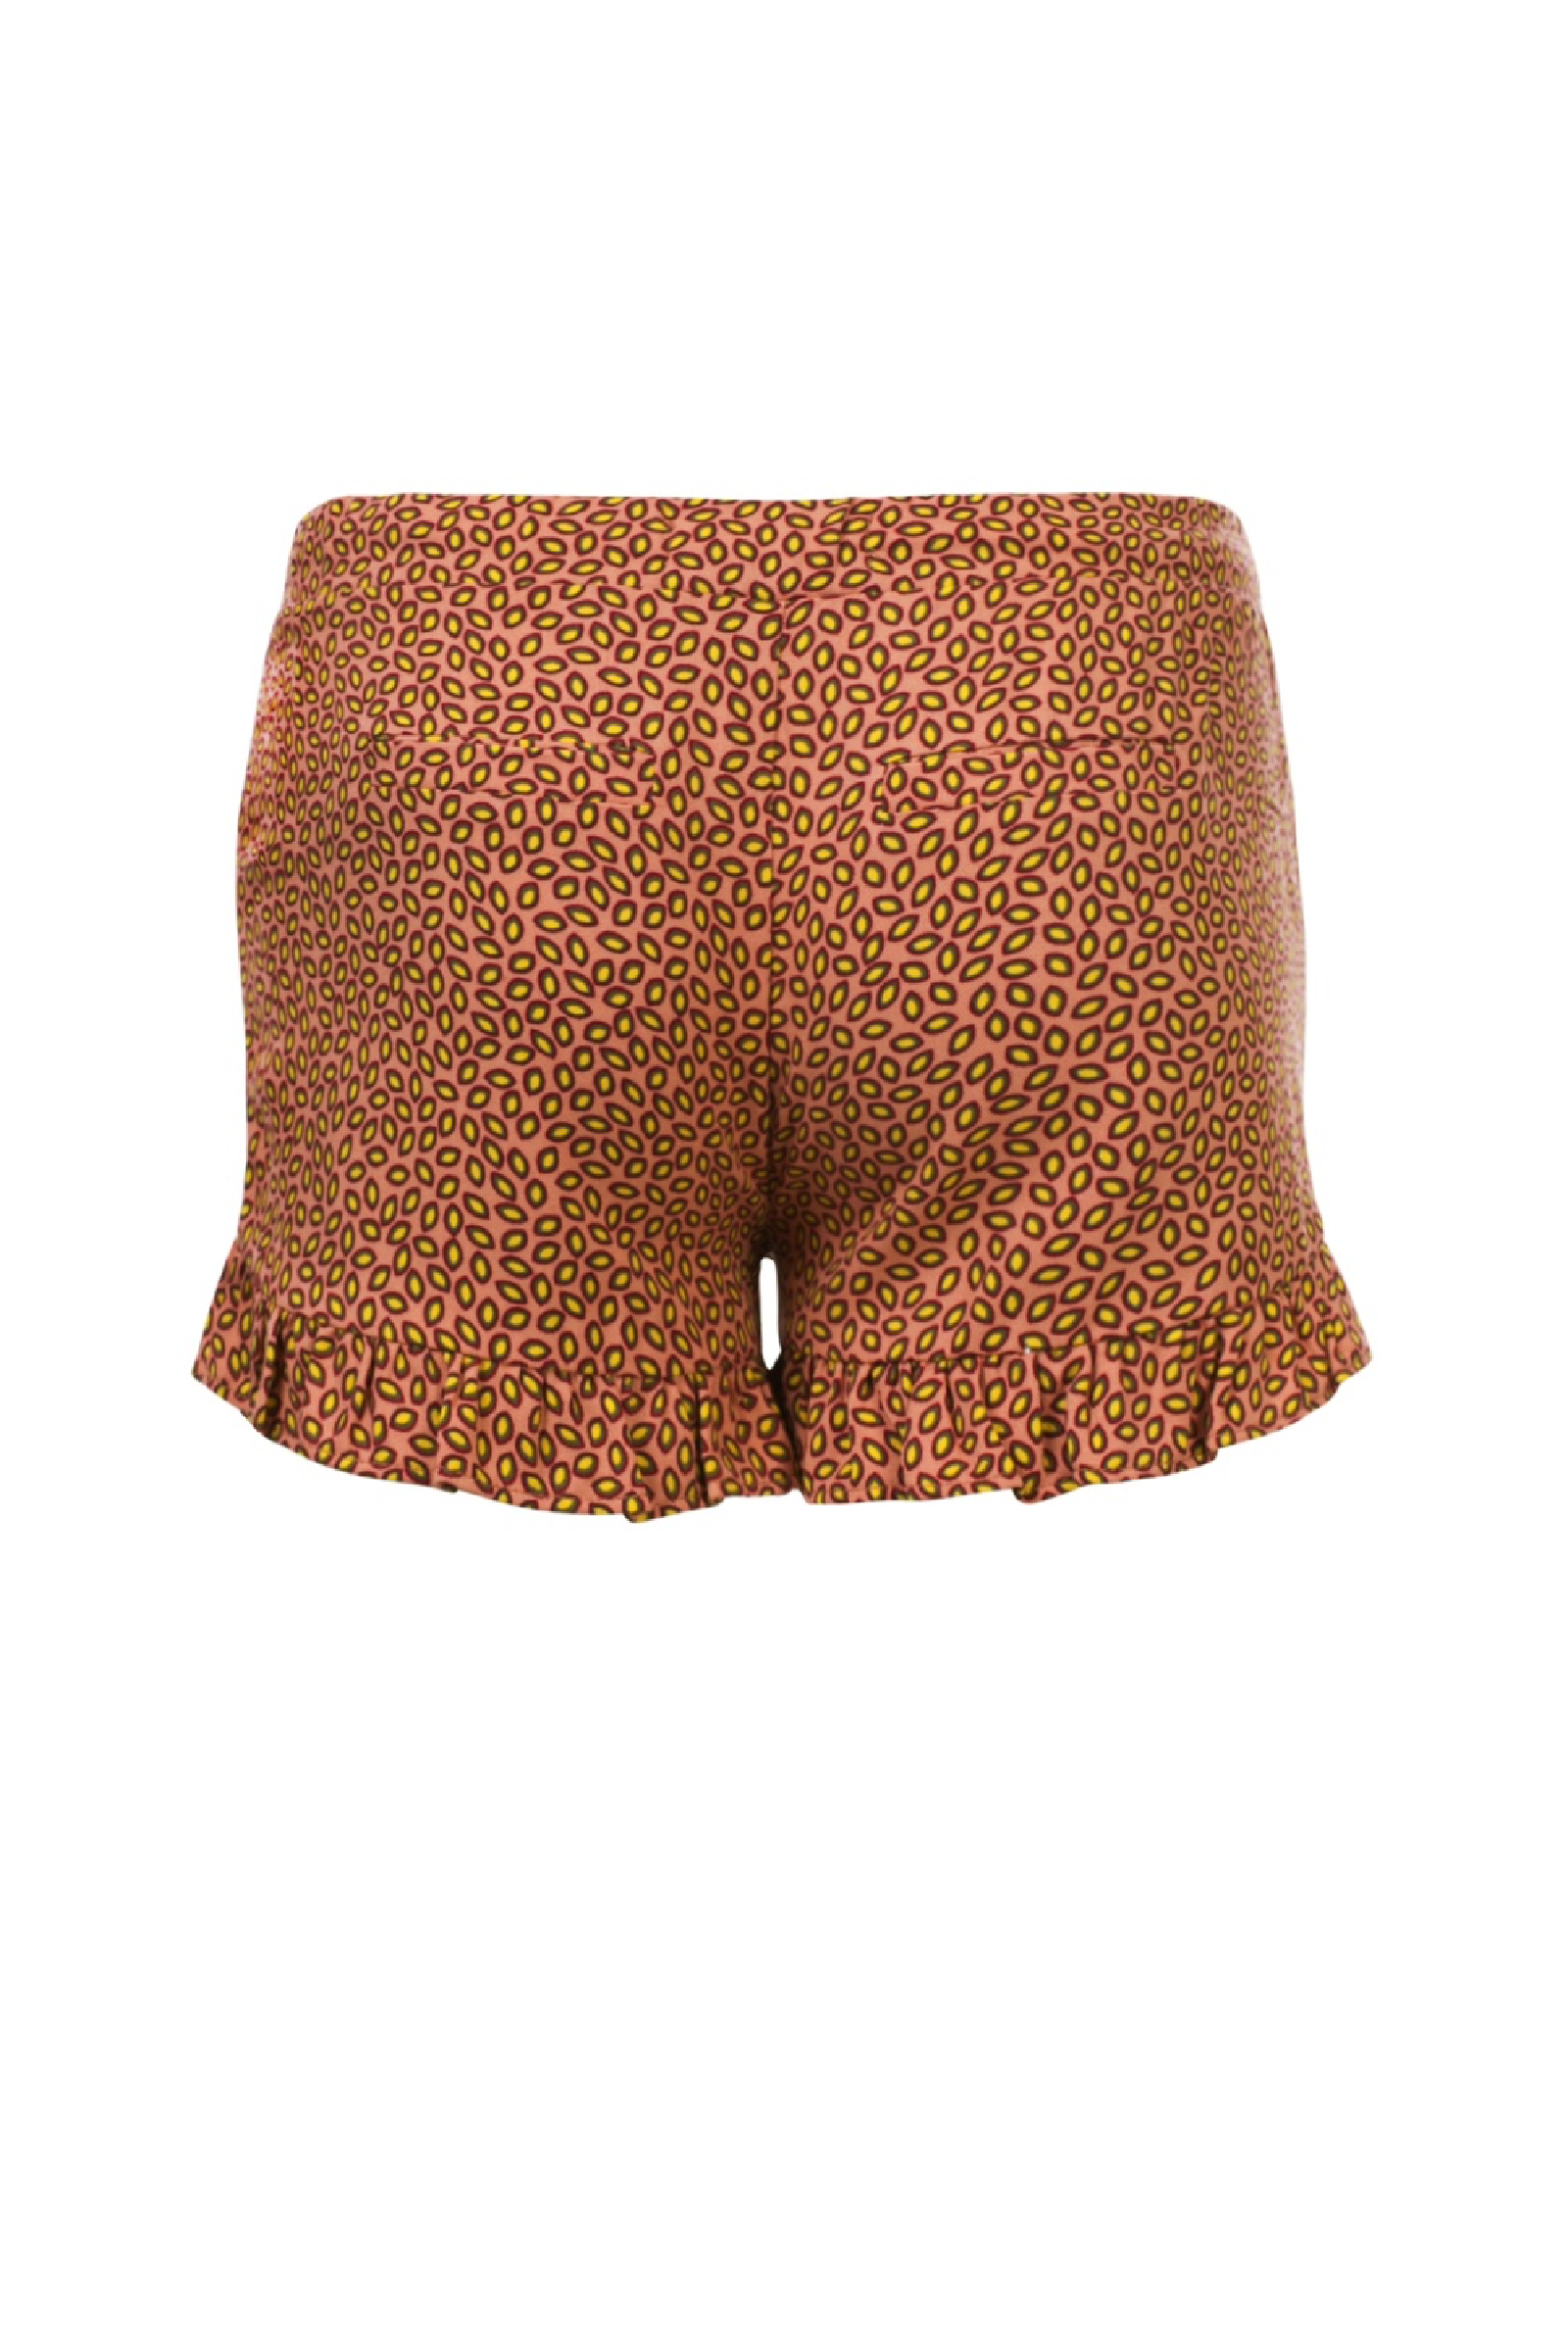 Meisjes Girls shorts van Looxs Revol. in de kleur Coral in maat 164.